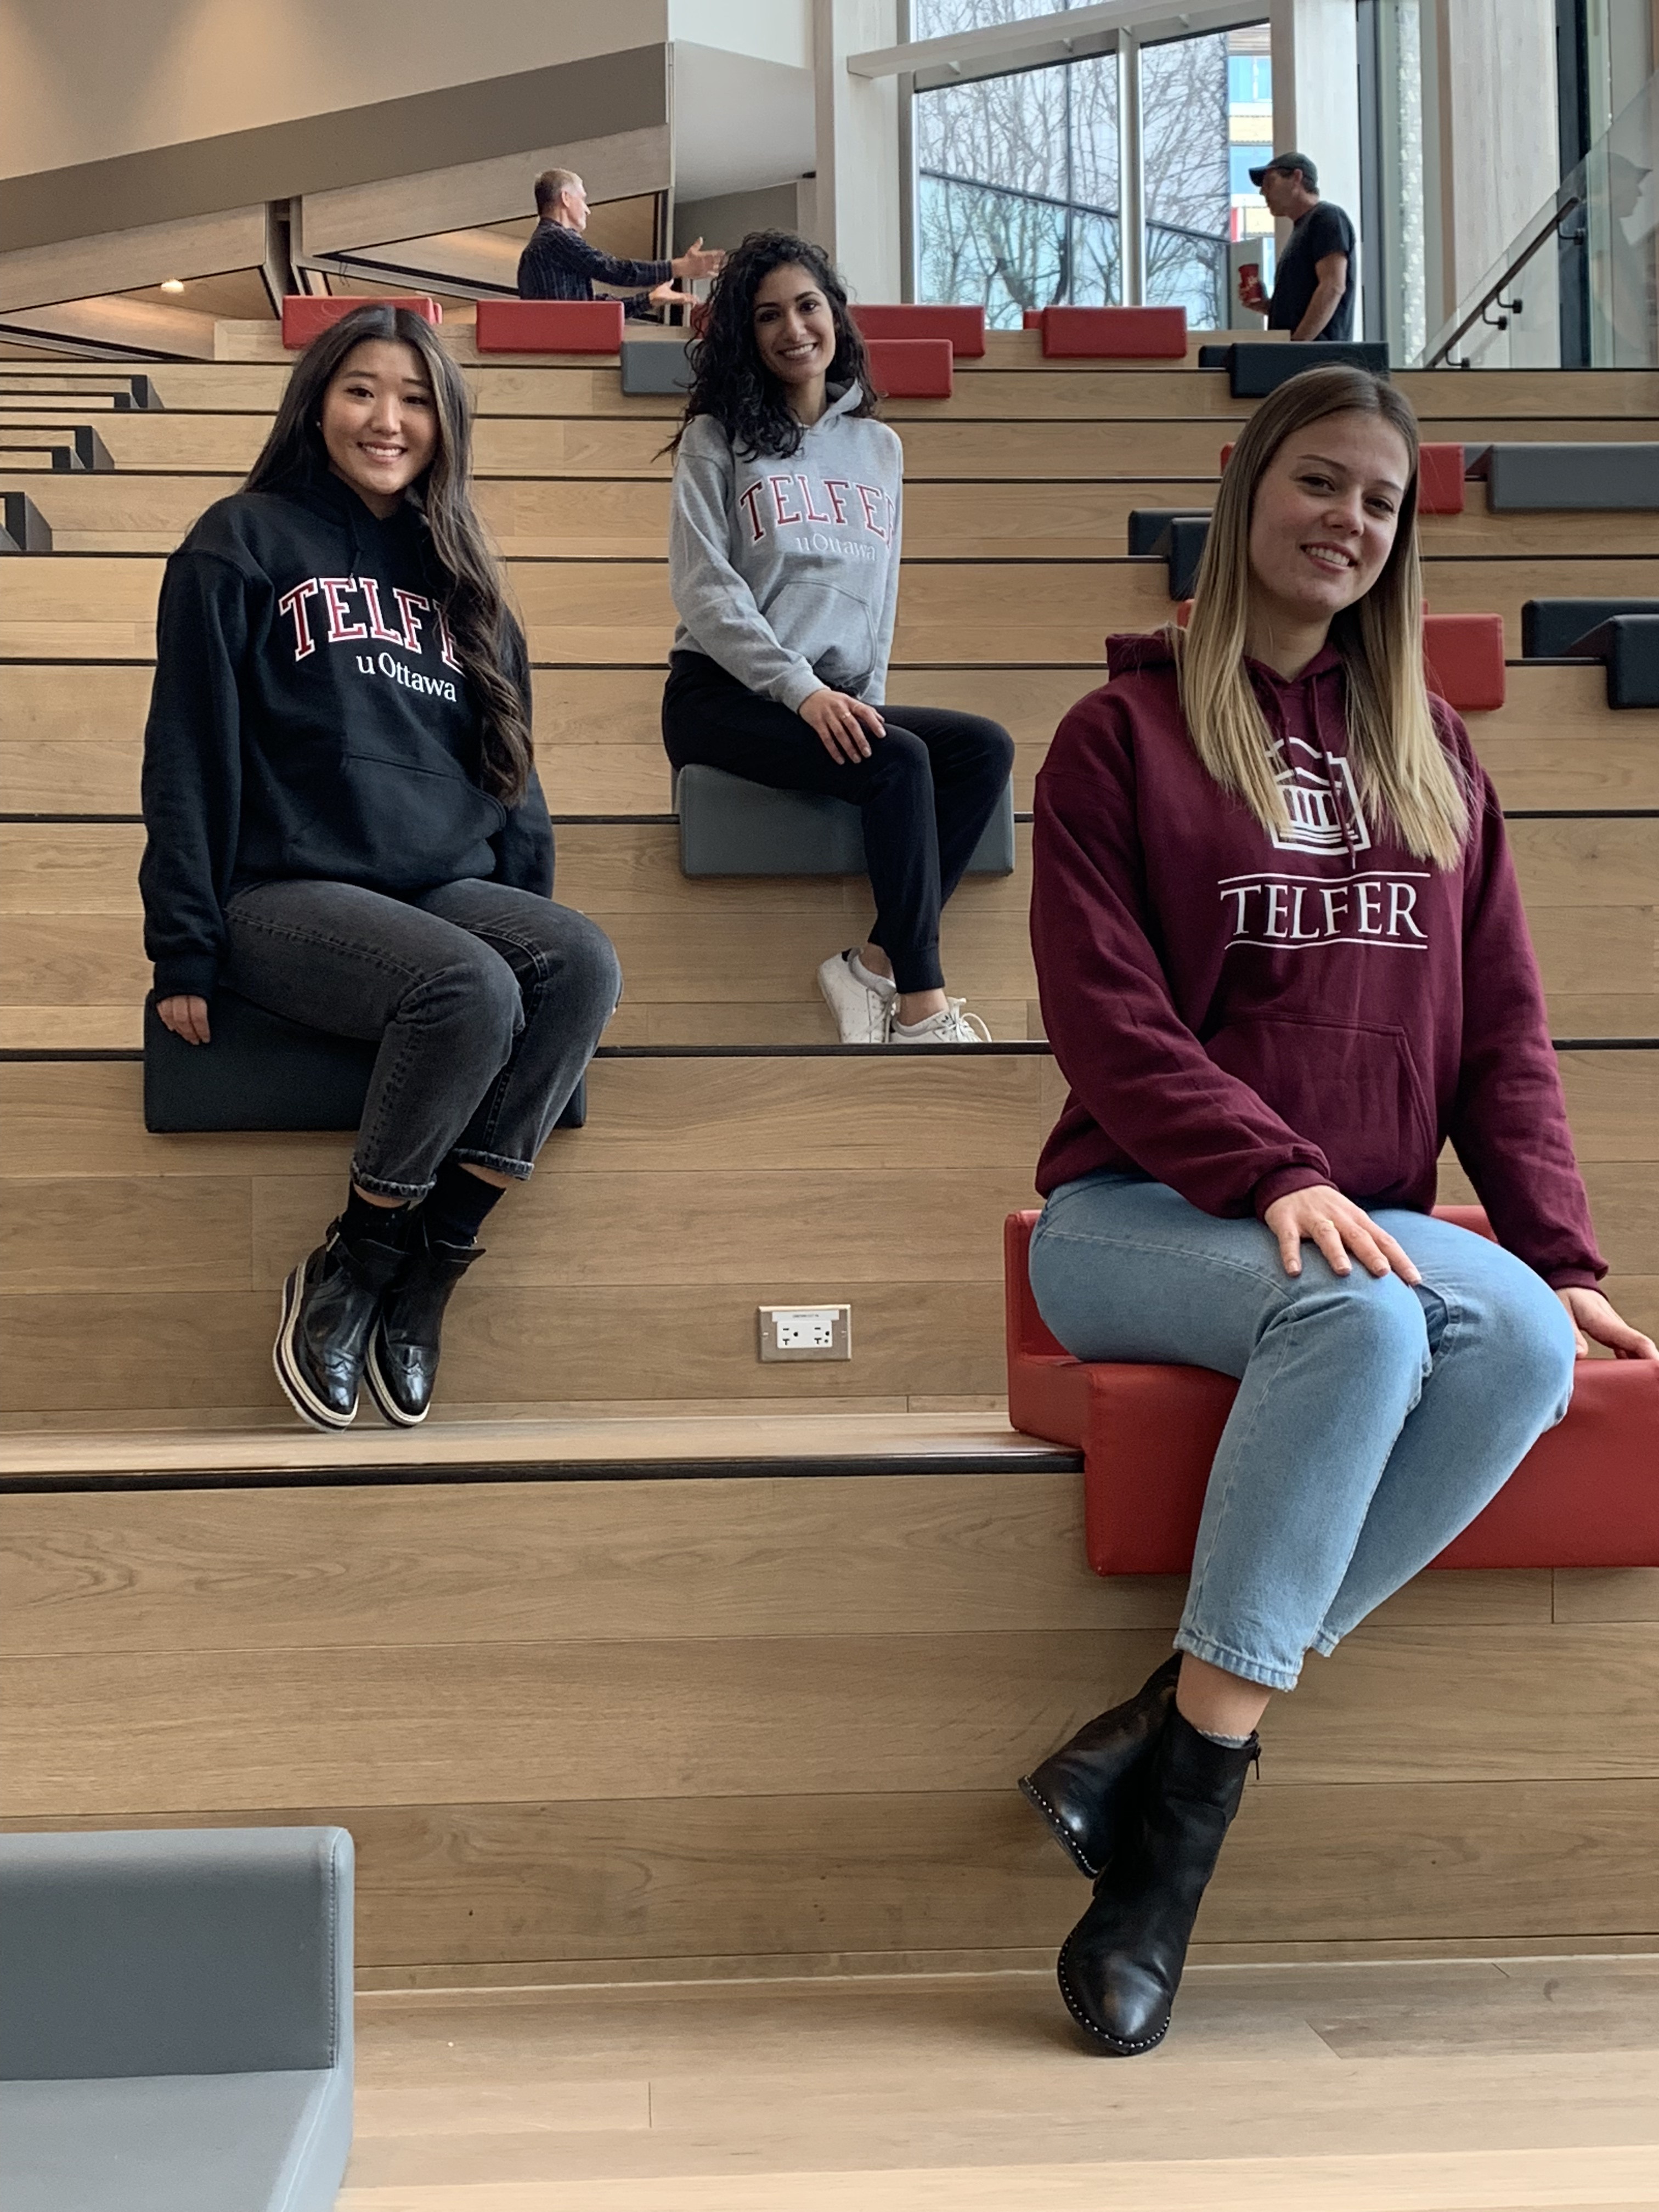 Trois étudiantes de Telfer assises dans les escaliers, souriant et portant des vêtements de Telfer.